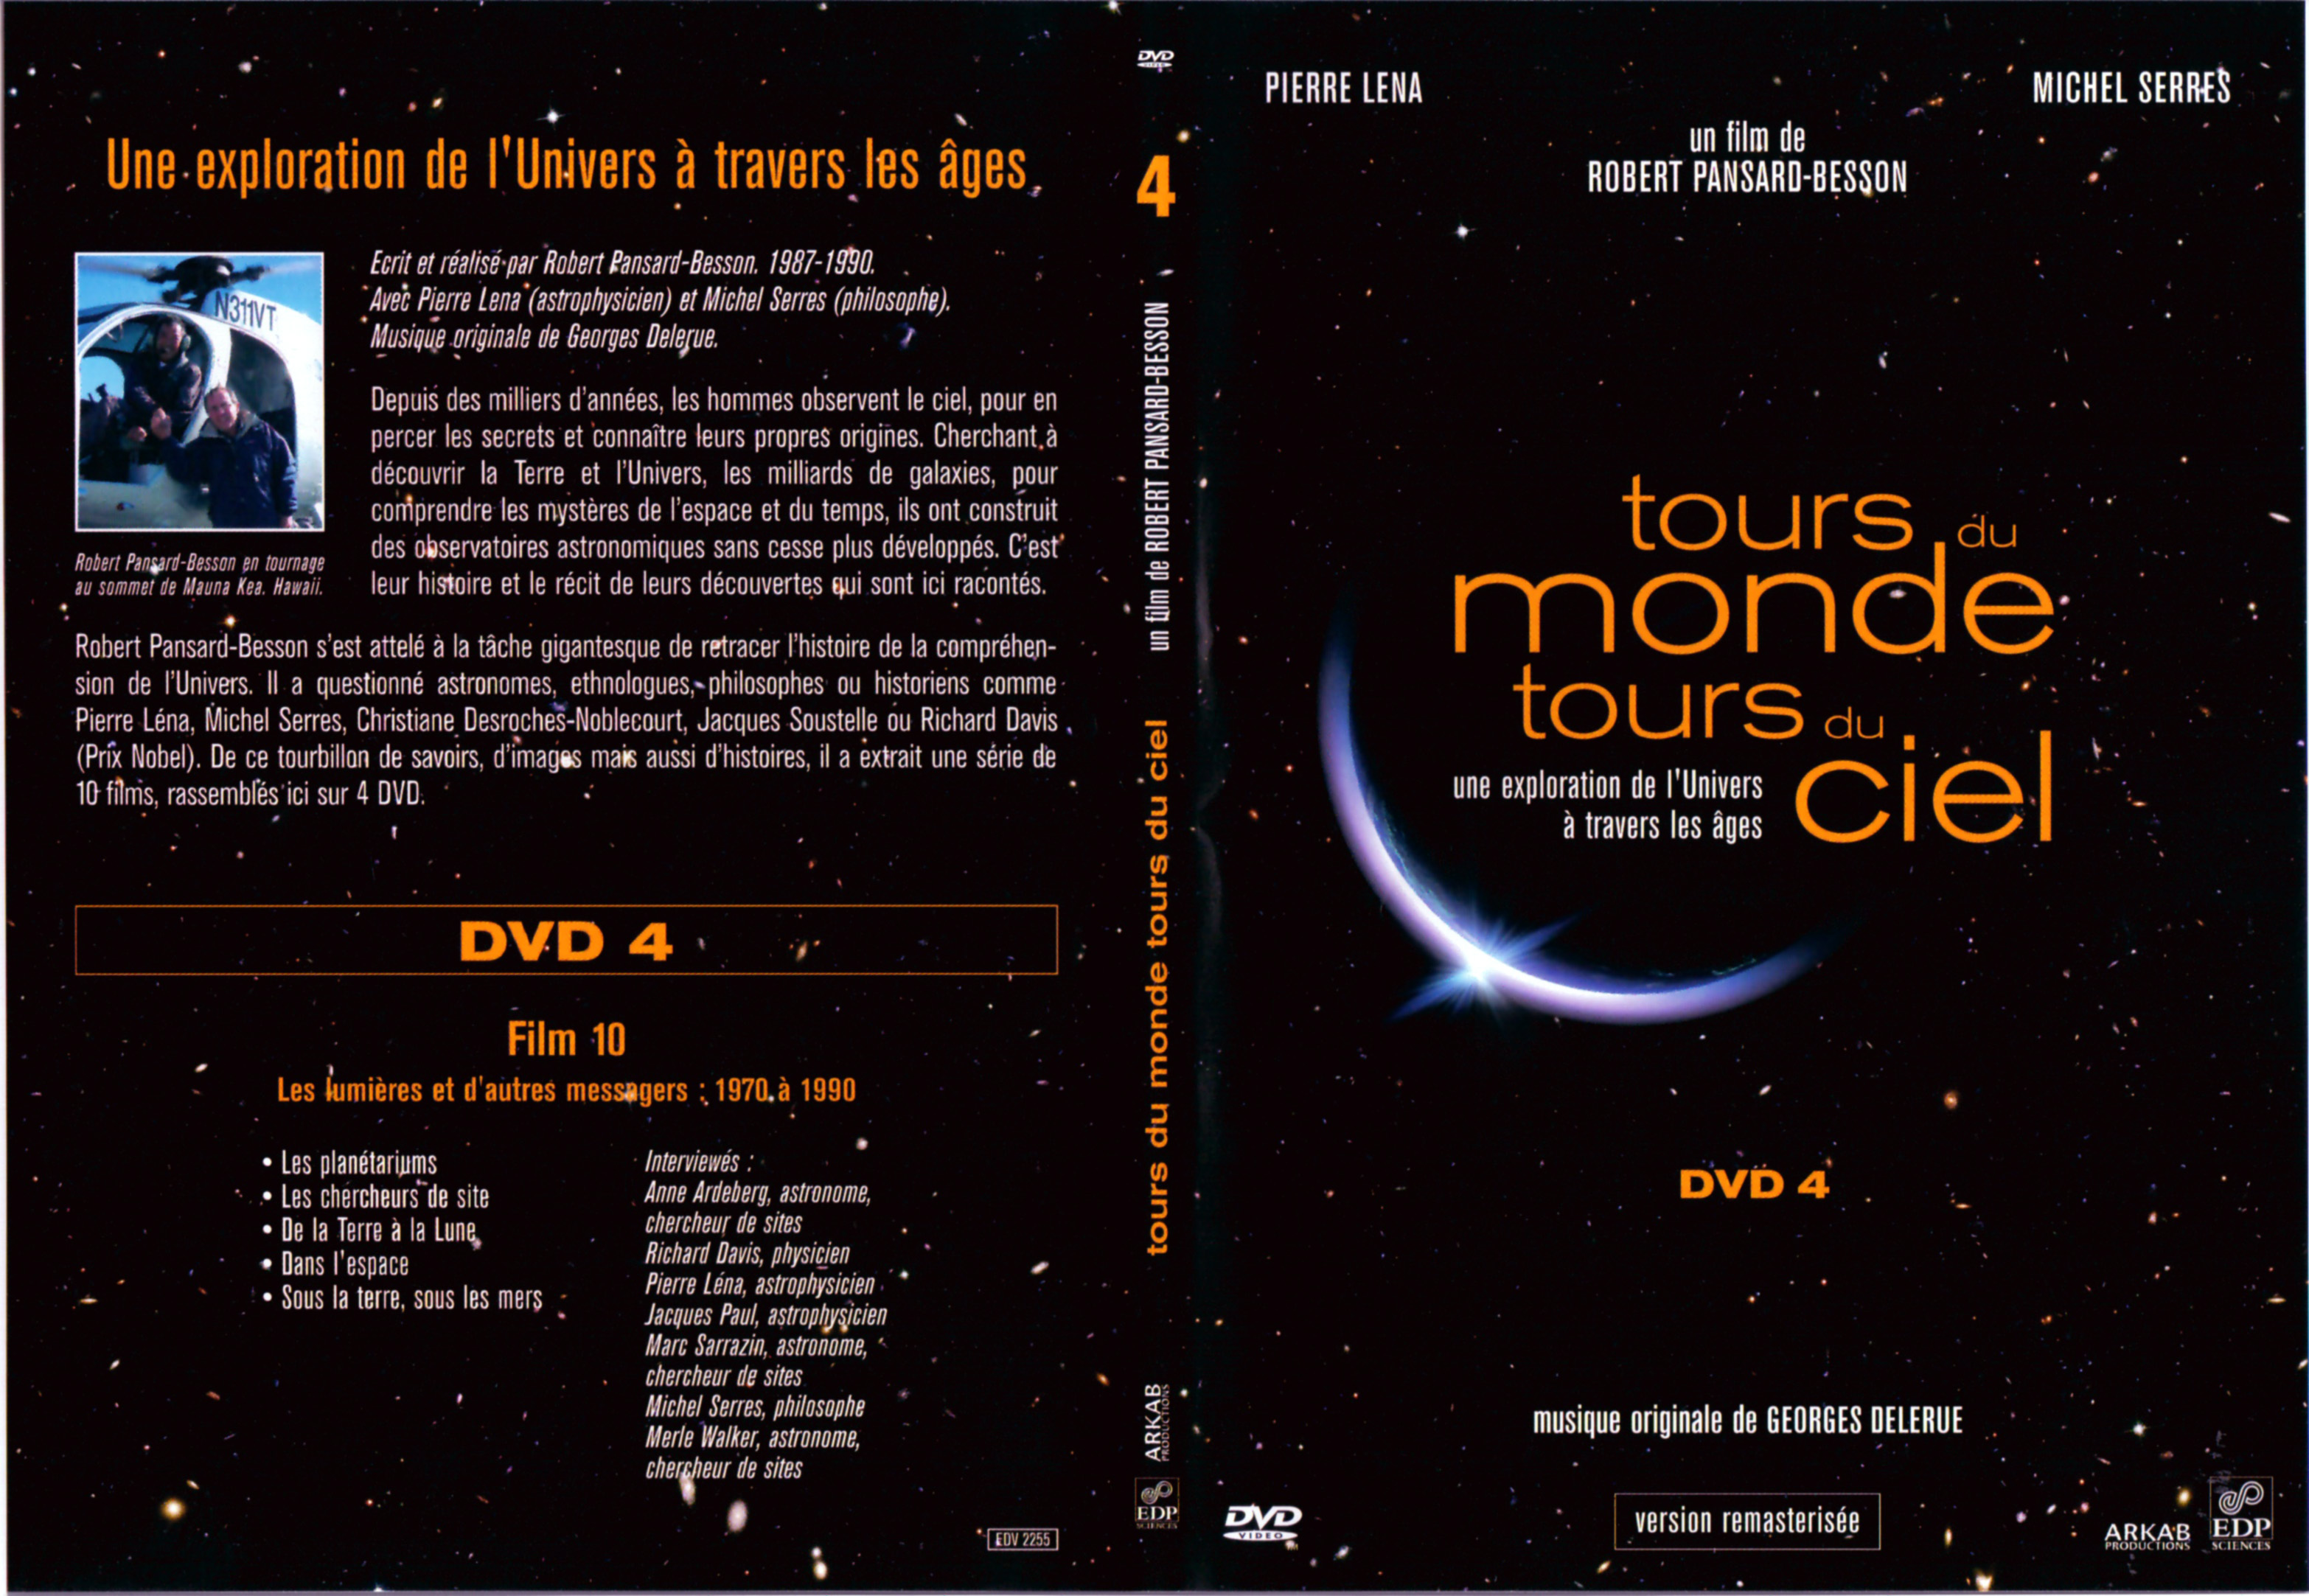 Jaquette DVD Tours du monde Tours du ciel DVD 4